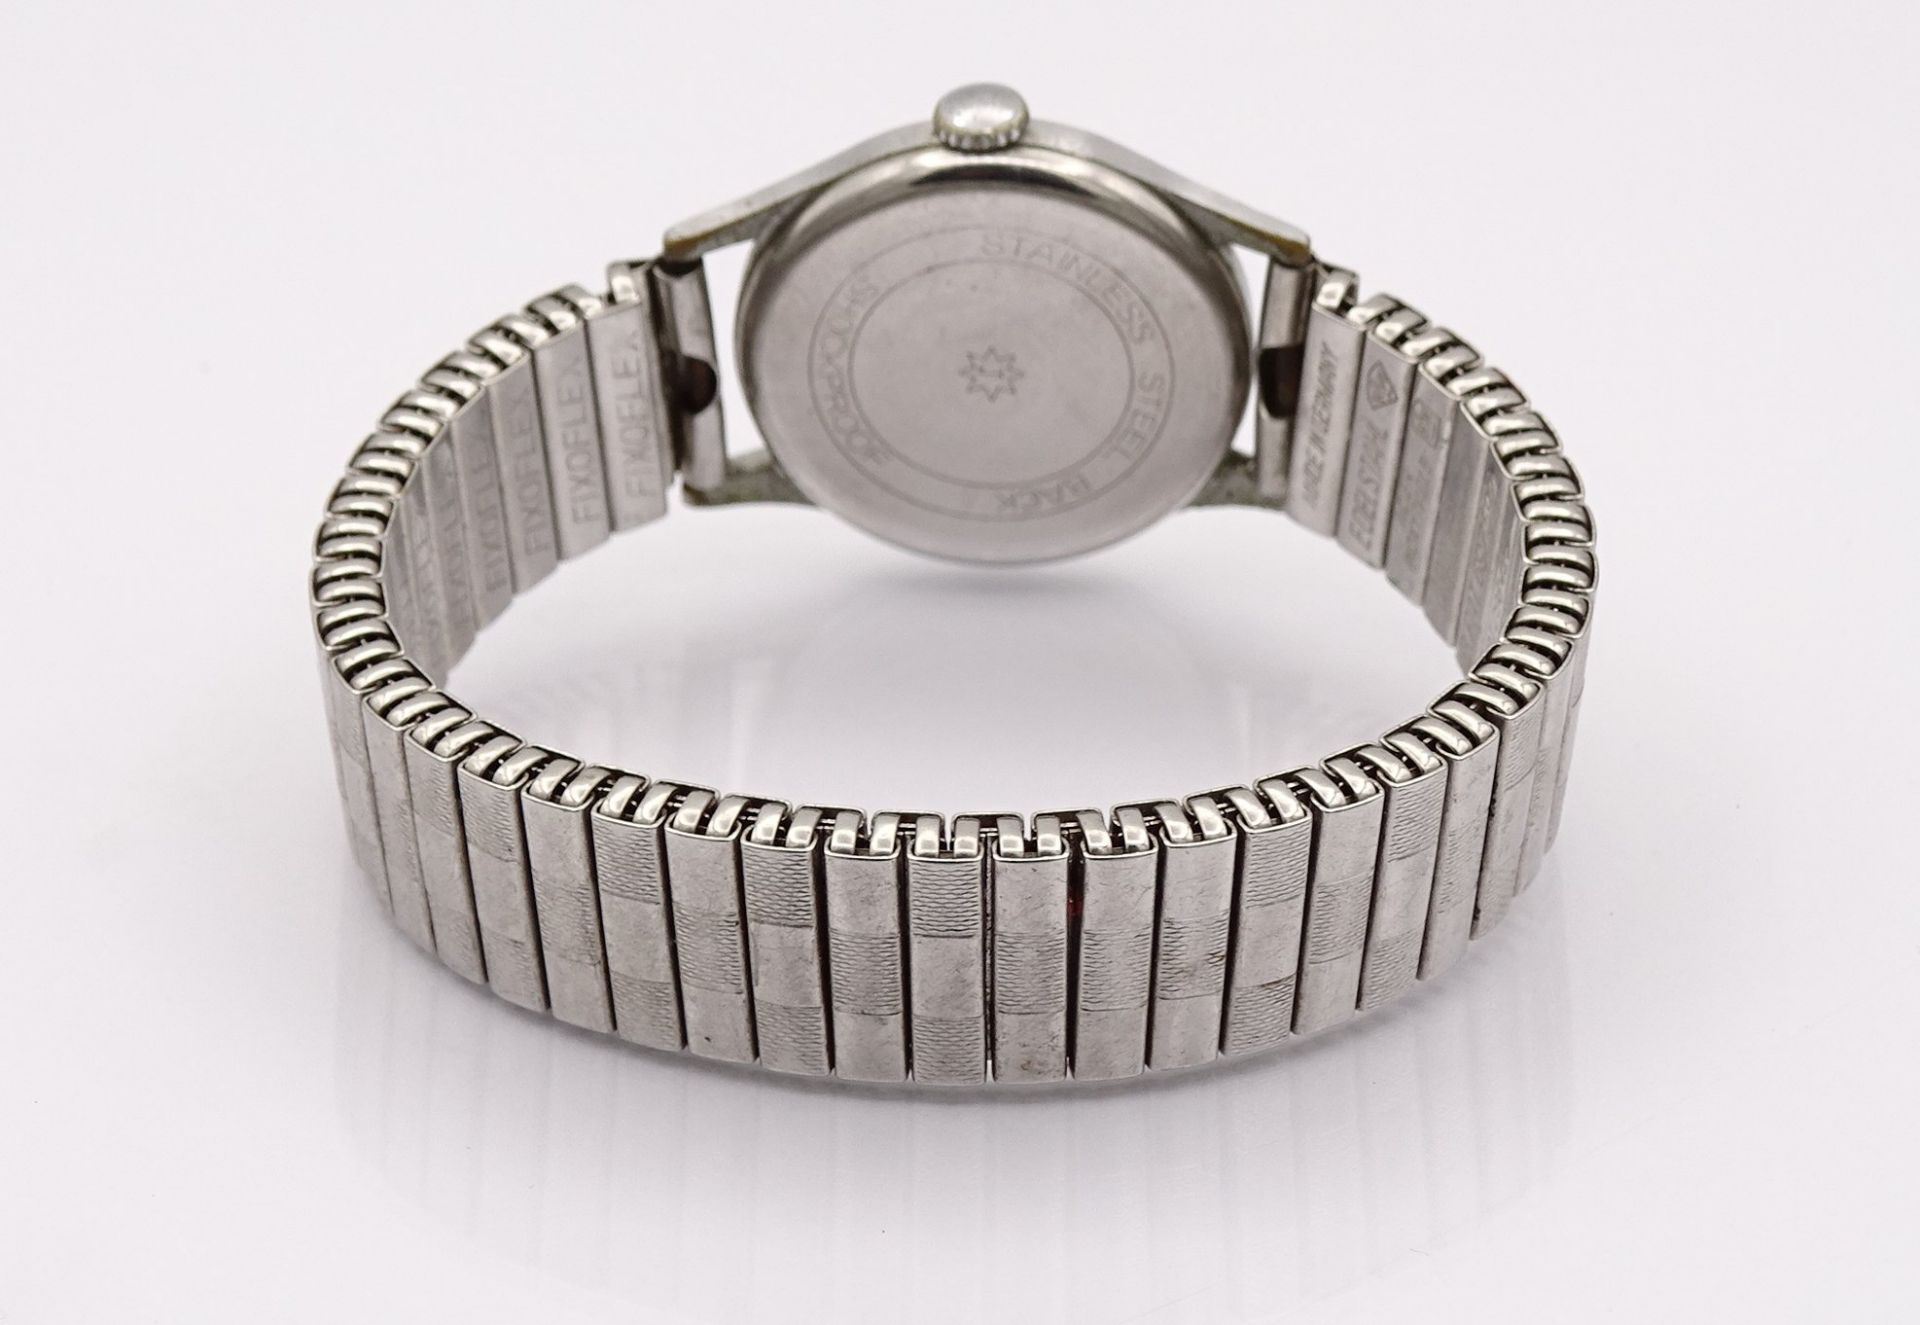 Armbanduhr "Junghans", mechanisch, Werk läuft, D. 28mm, Alters- und Gebrauchsspuren - Image 4 of 4